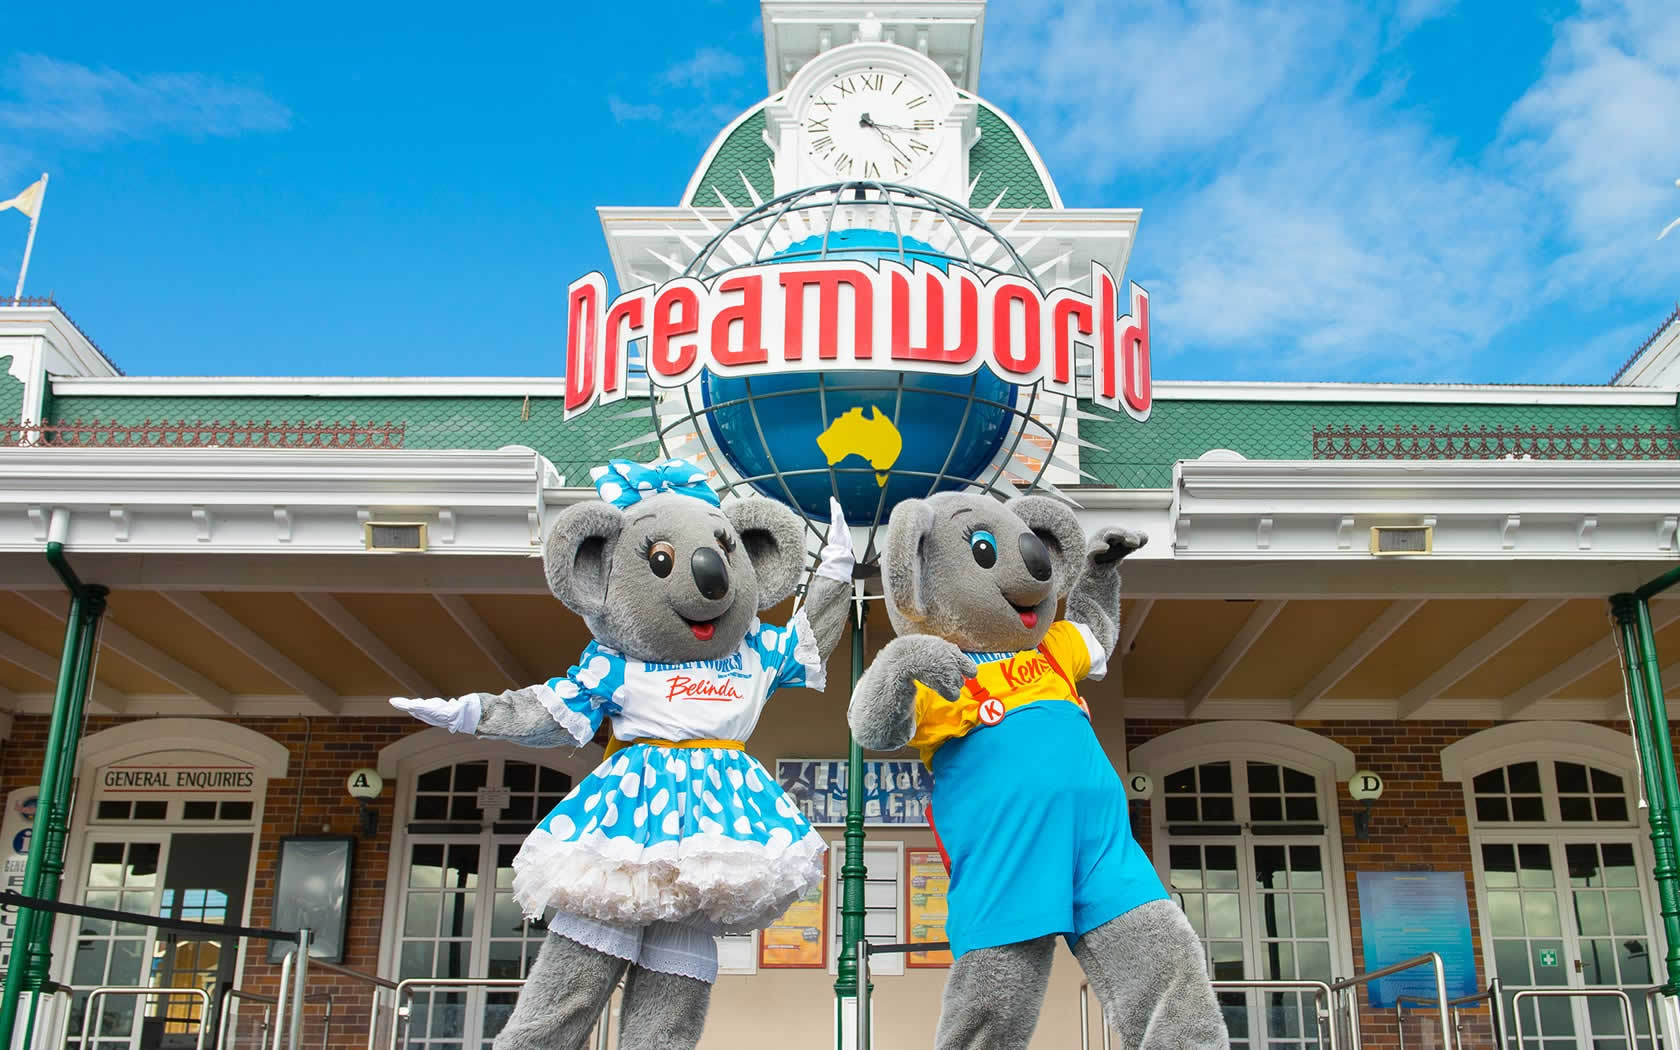 Dreamworld Australia -GoldCoast - Amusement parks in Australia